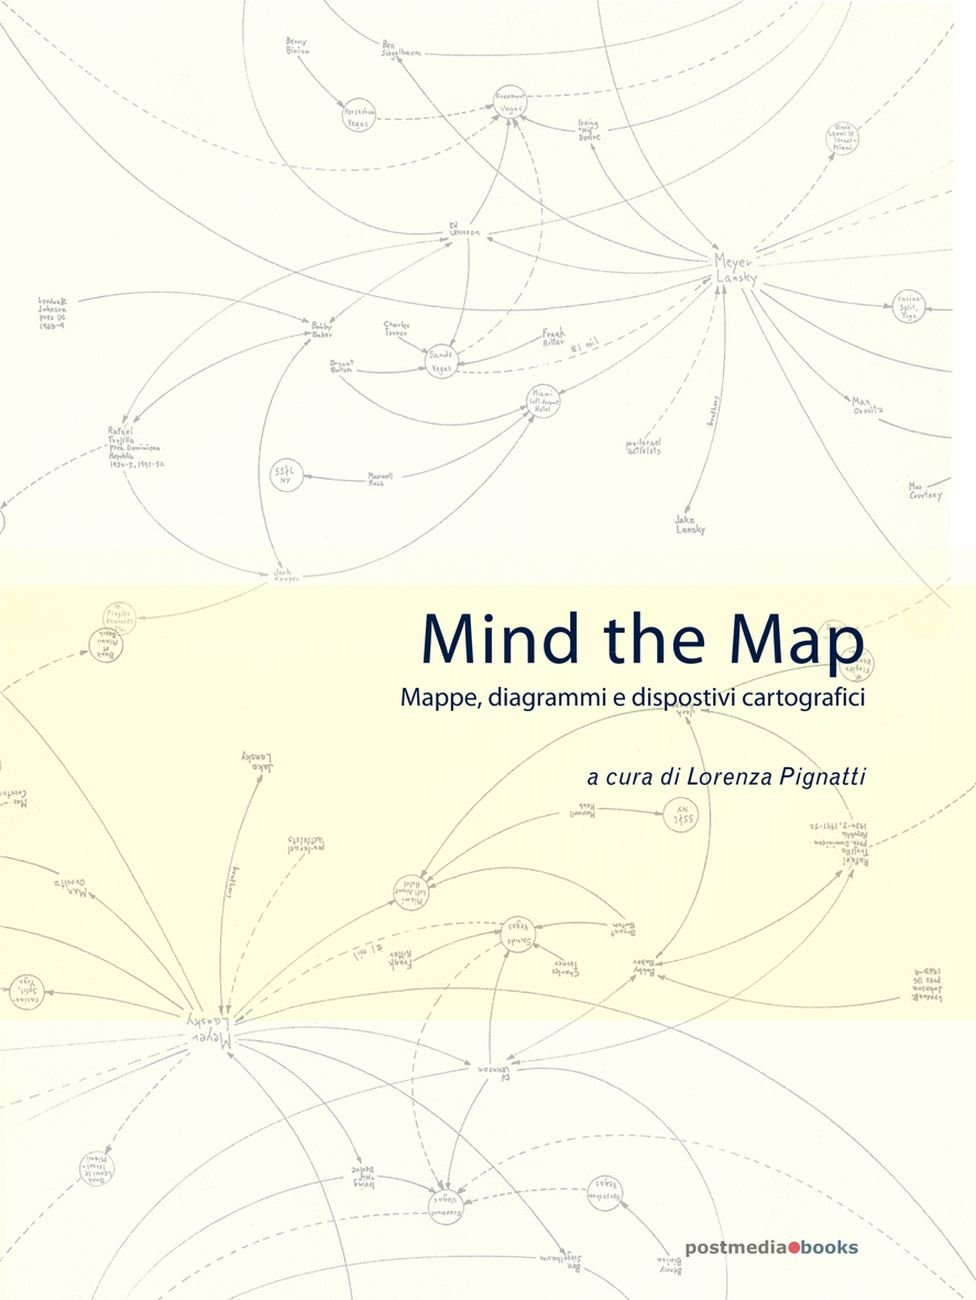 Lorenza Pignatti (a cura di) – Mind the Map (Postmedia Books, Milano 2011)